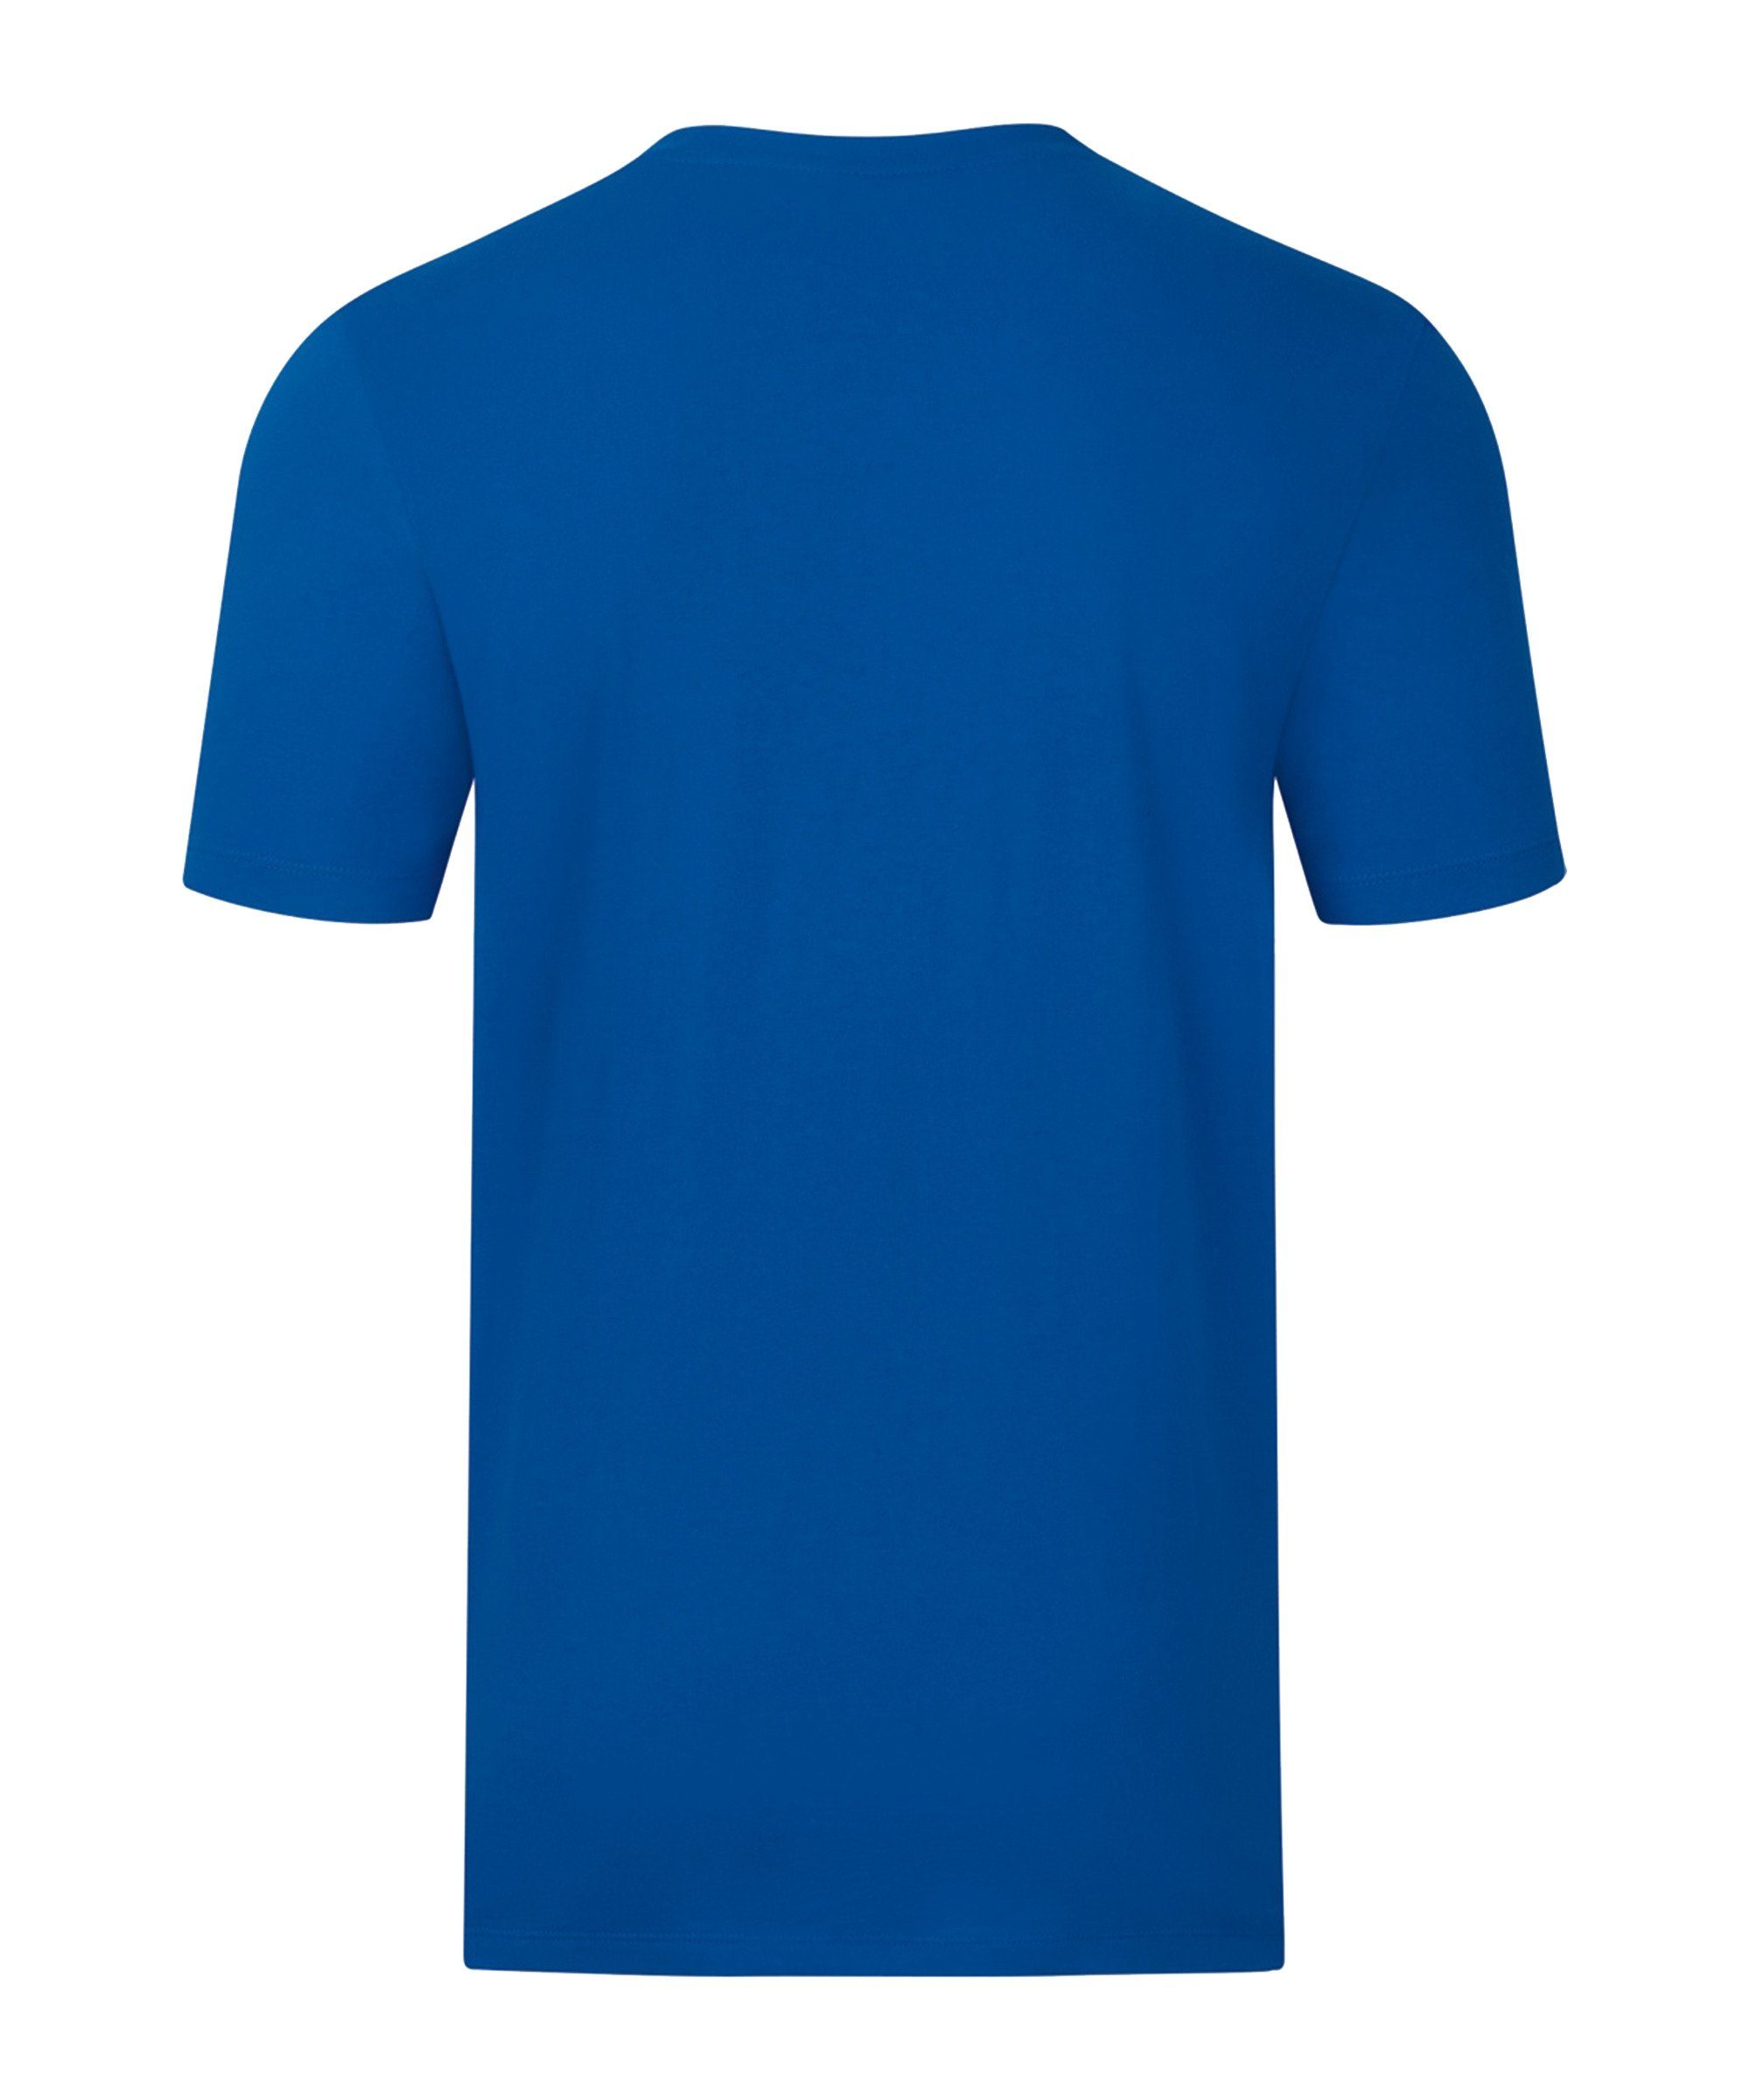 Promo T-Shirt Jako blauweiss default T-Shirt